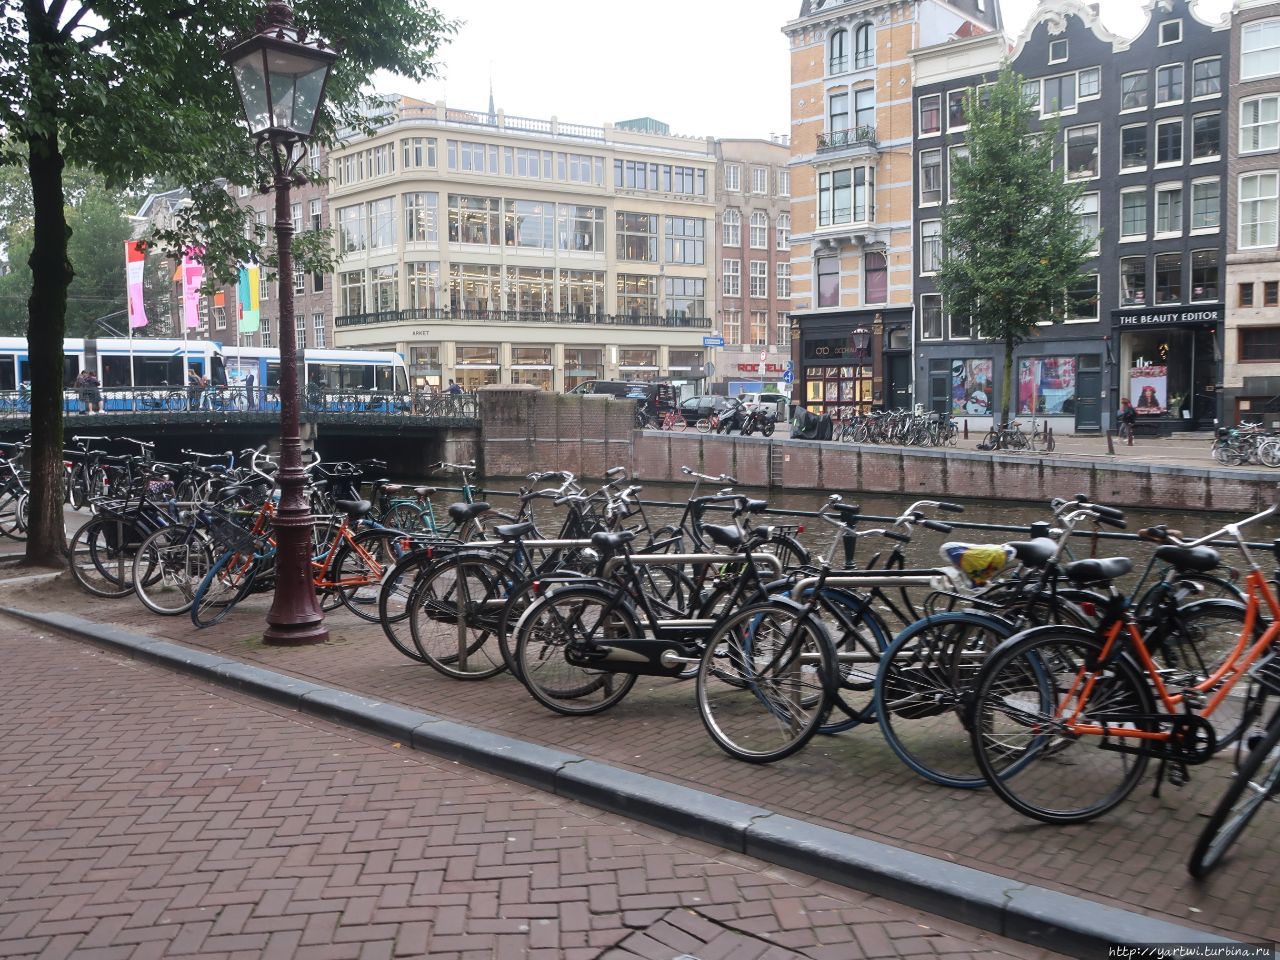 Чуть позже теряешь счет мостам, каналам и особенно велосипедам, которые находятся повсюду. Амстердам, Нидерланды